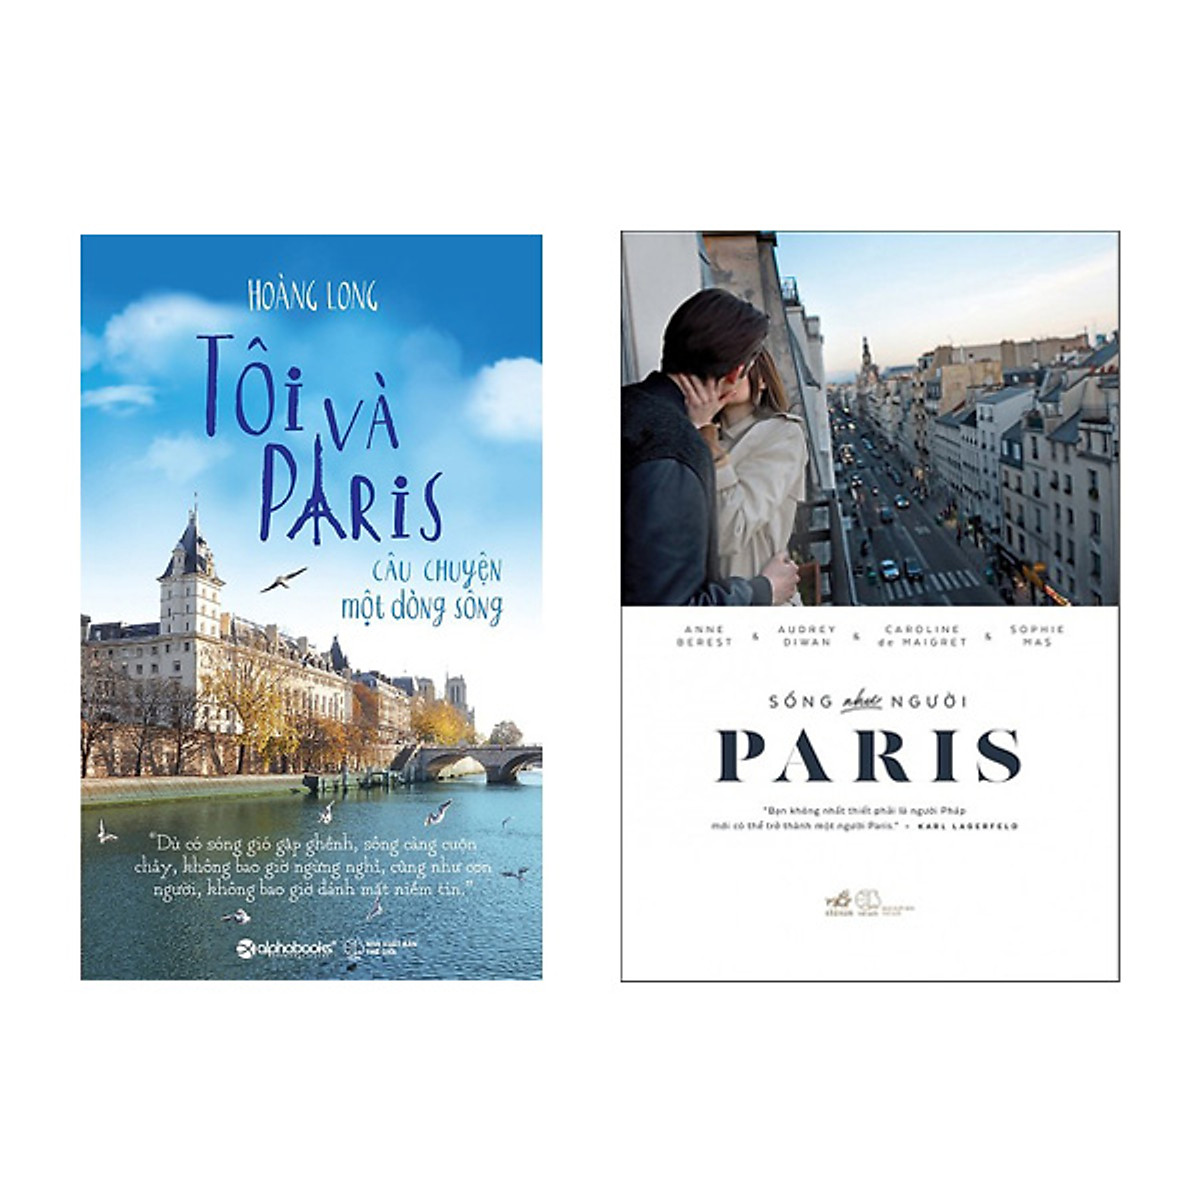 Bộ Sách Về Paris - Tôi Và Paris - Câu Chuyện Một Dòng Sông và Sống Như Người Paris